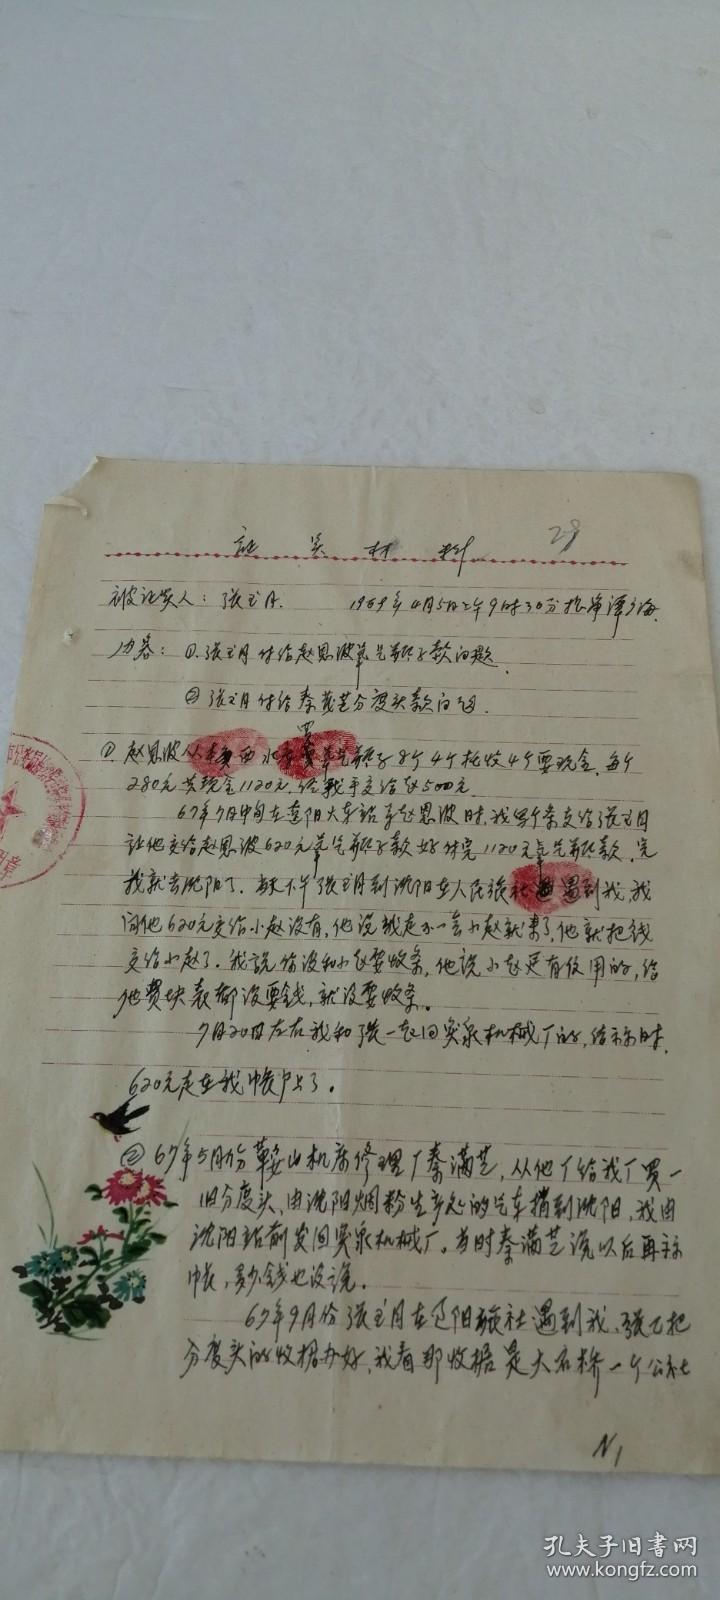 1969年菊花燕子证实材料